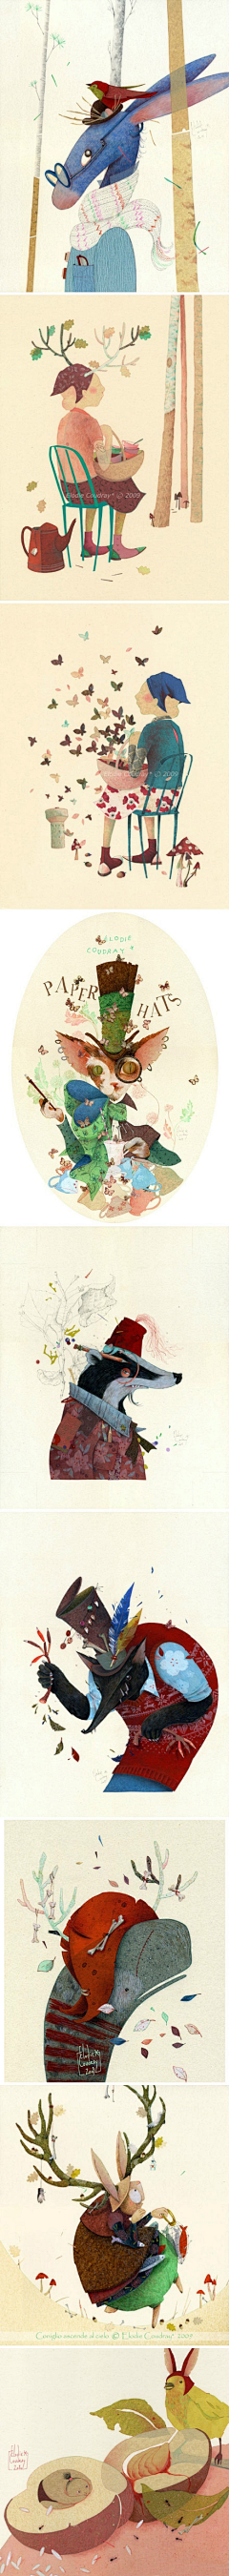 木木桑麻采集到商业插画-动物形态参考